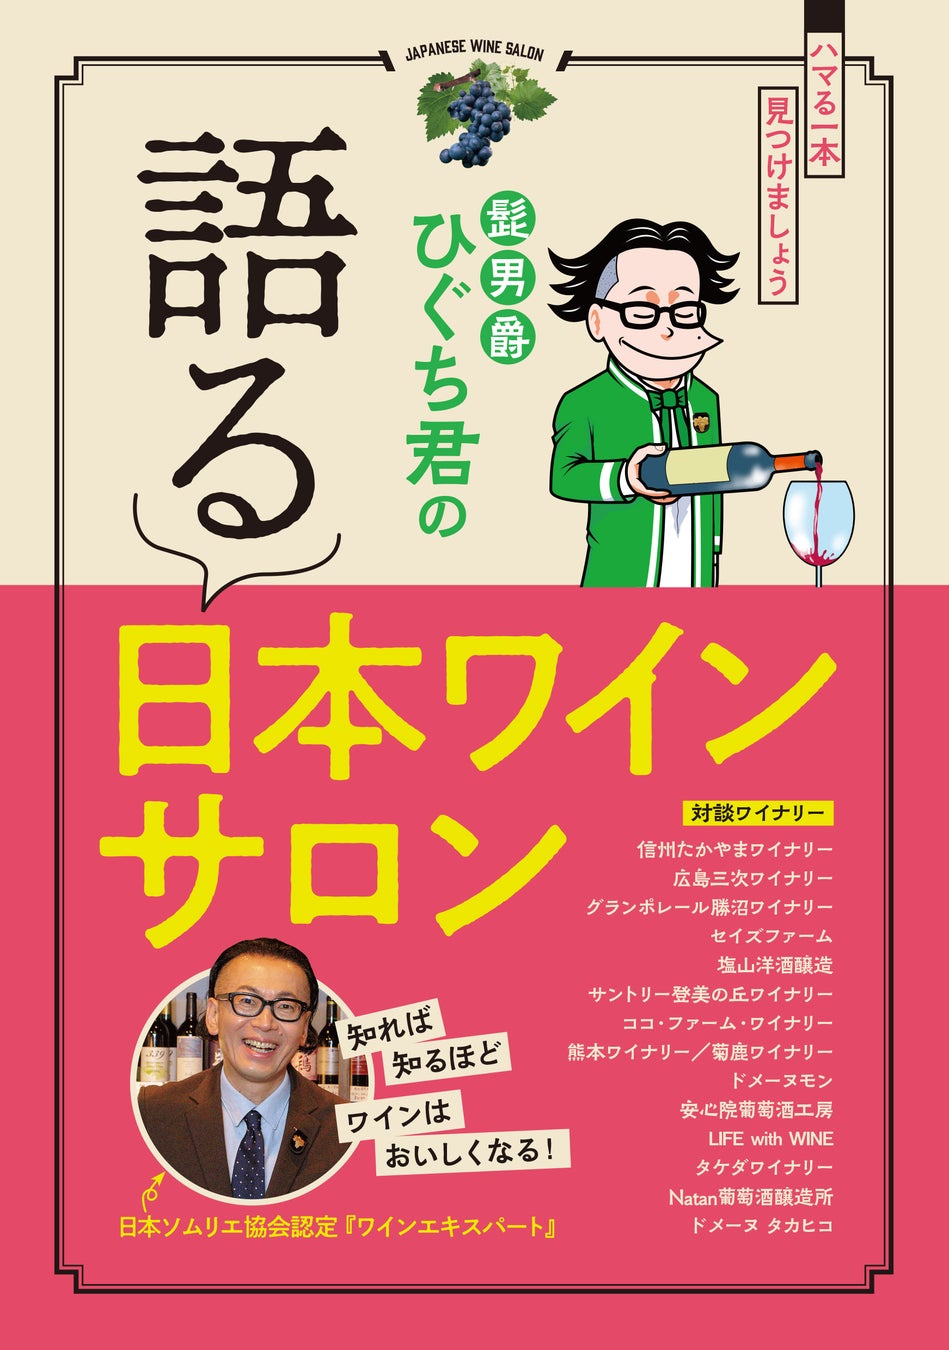 『髭男爵ひぐち君の 語る 日本ワインサロン』発売のサブ画像1